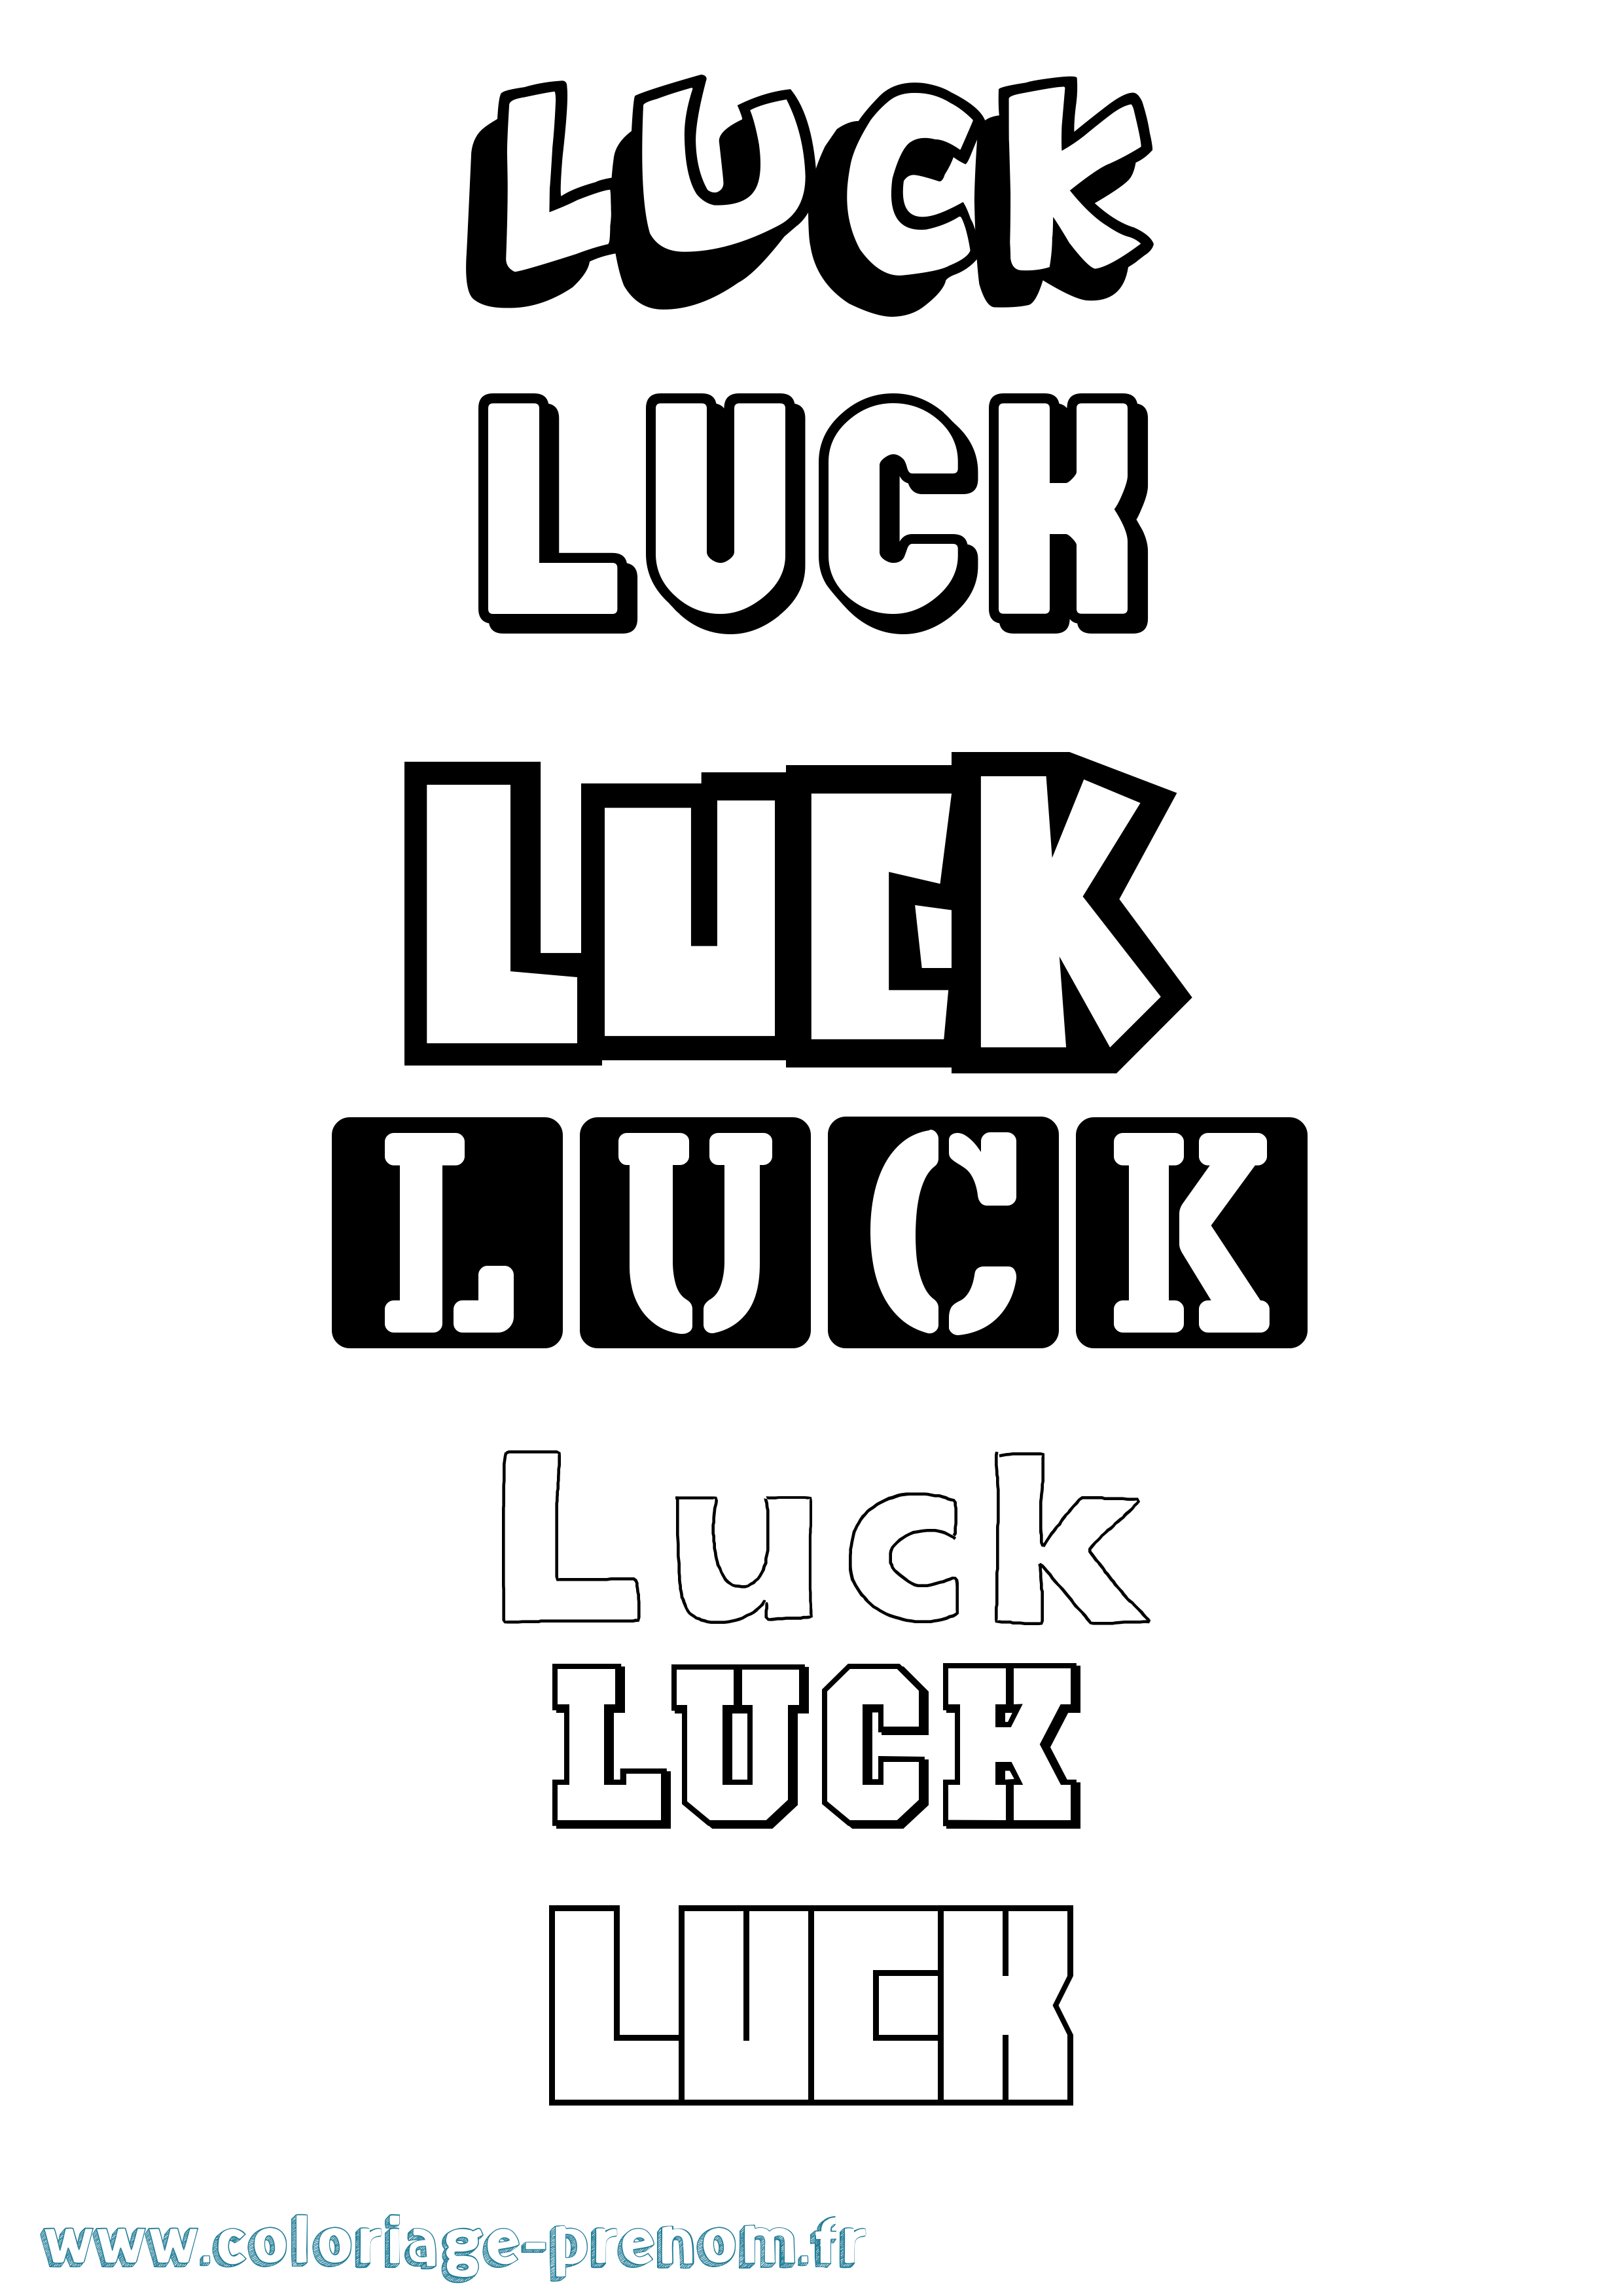 Coloriage prénom Luck Simple